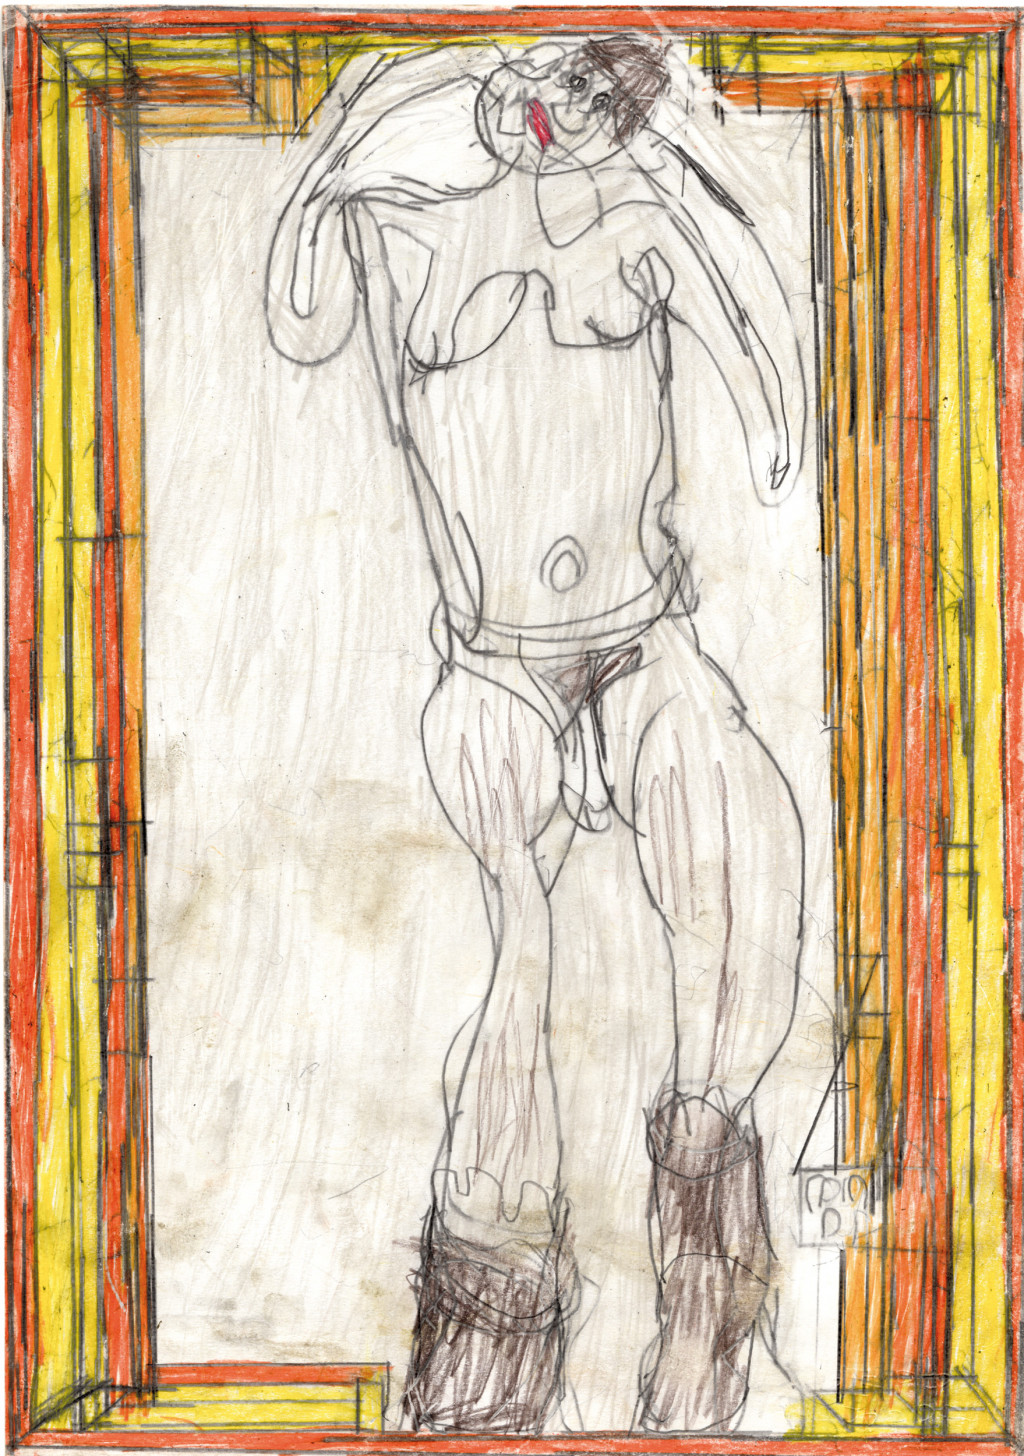 Josef Hofer, *sans titre*, 2008. crayon de couleur et graphite sur papier, 42 x 29.6 cm - © christian berst — art brut